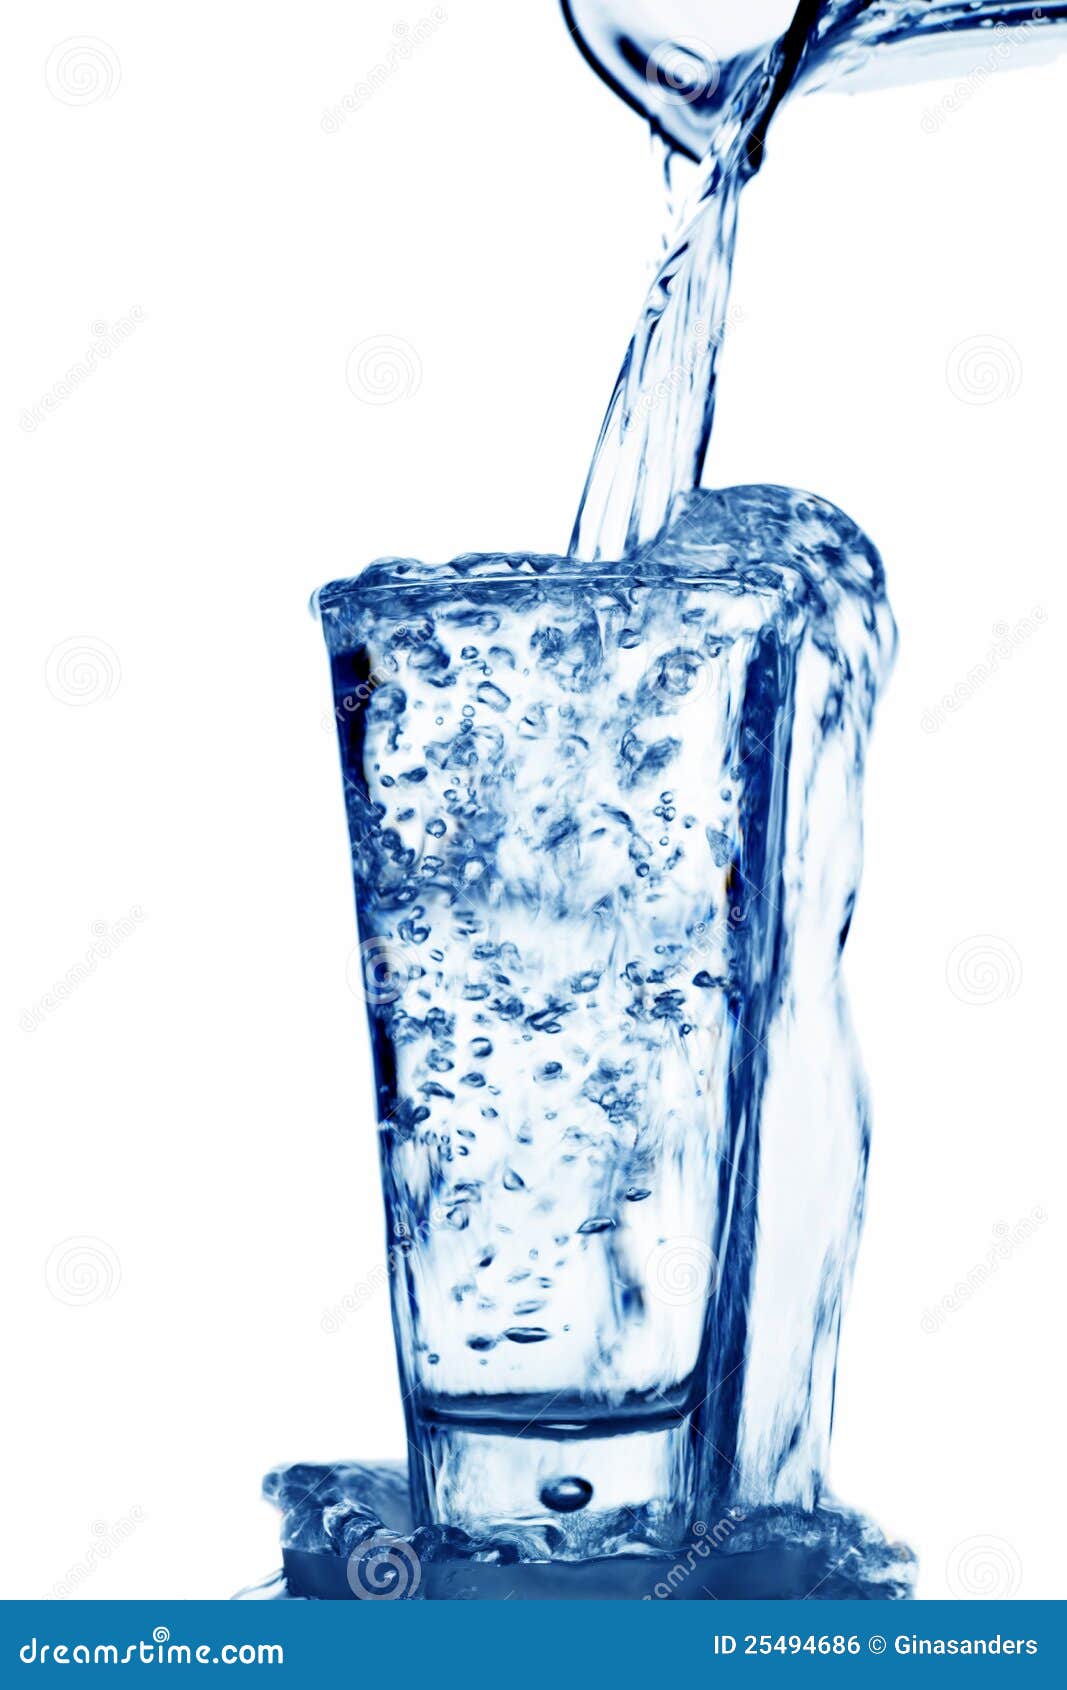 В стакан до краев налита вода. Переполненный стакан с водой. Вода льется через край. Вода льется в стакан. Вода вытекает.